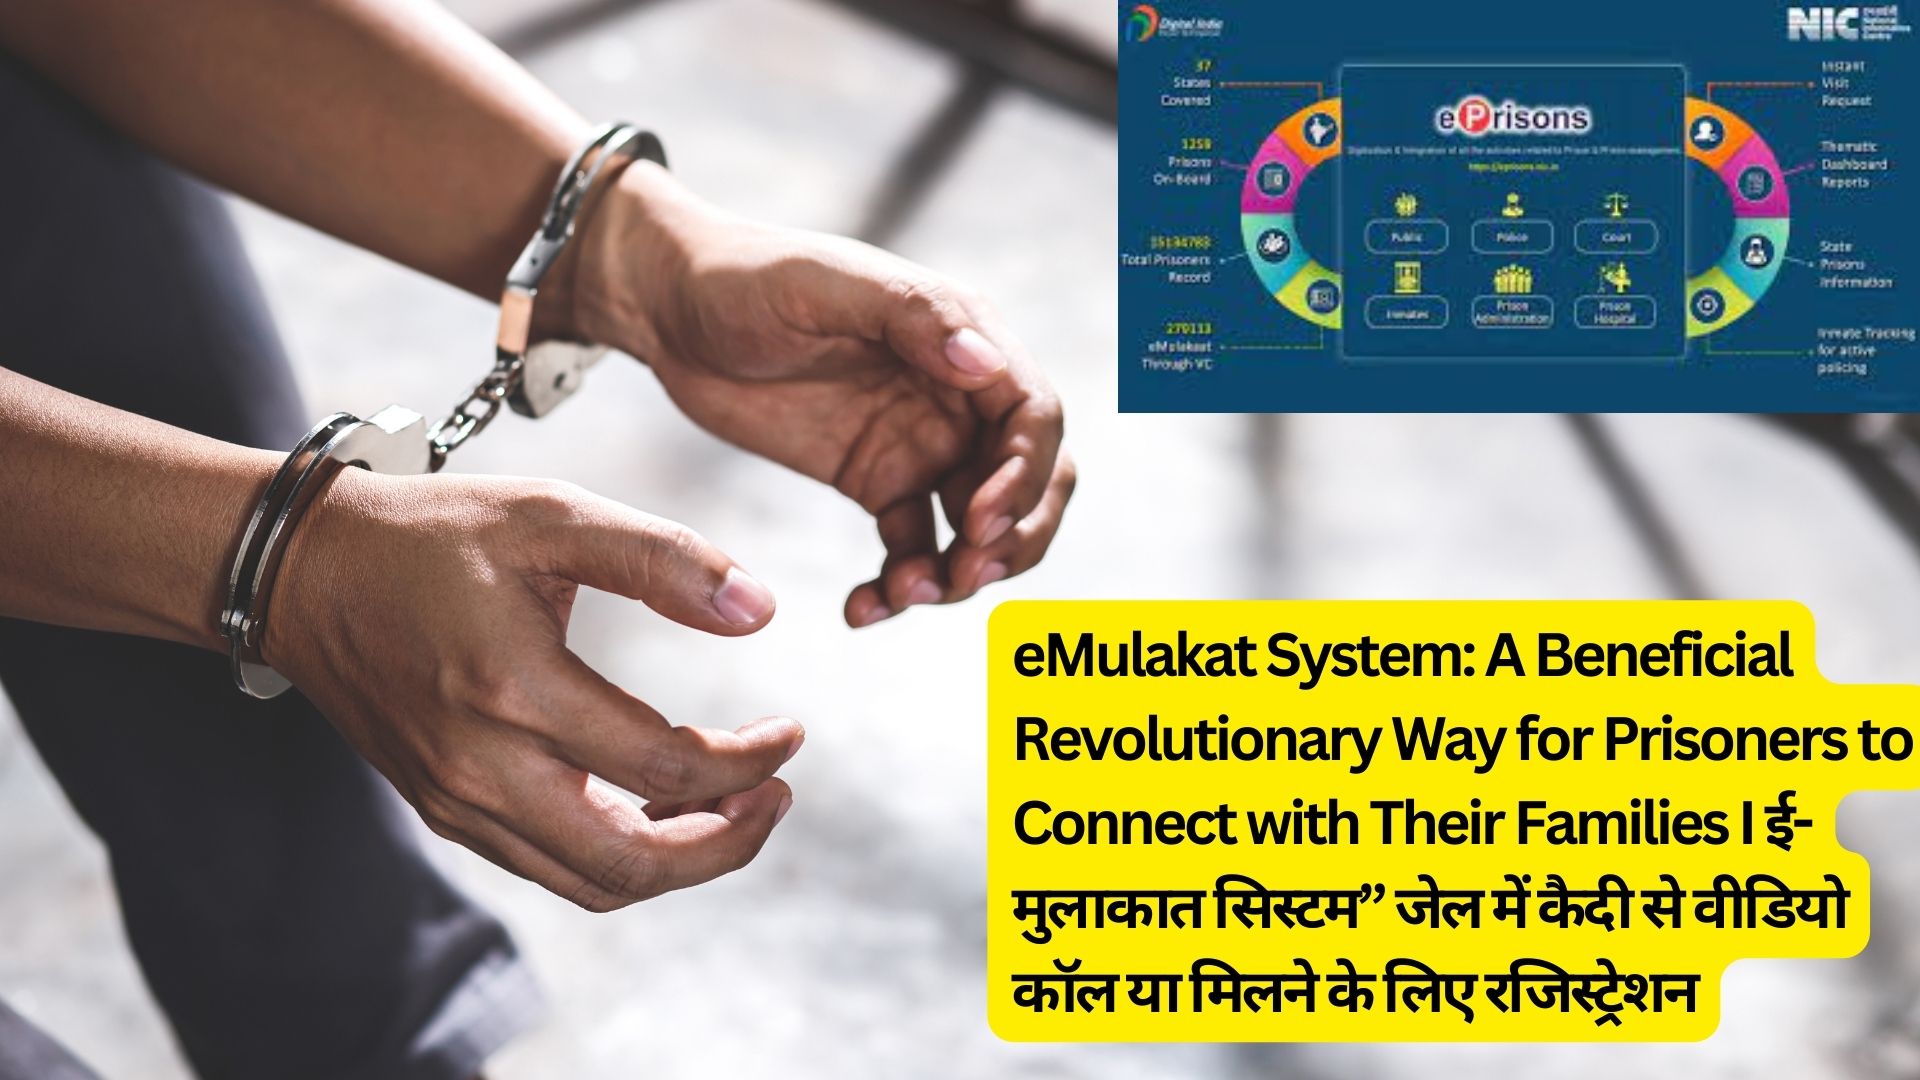 eMulakat System: A Beneficial Revolutionary Way for Prisoners to Connect with Their Families I ई-मुलाकात सिस्टम” जेल में कैदी से वीडियो कॉल या मिलने के लिए रजिस्ट्रेशन